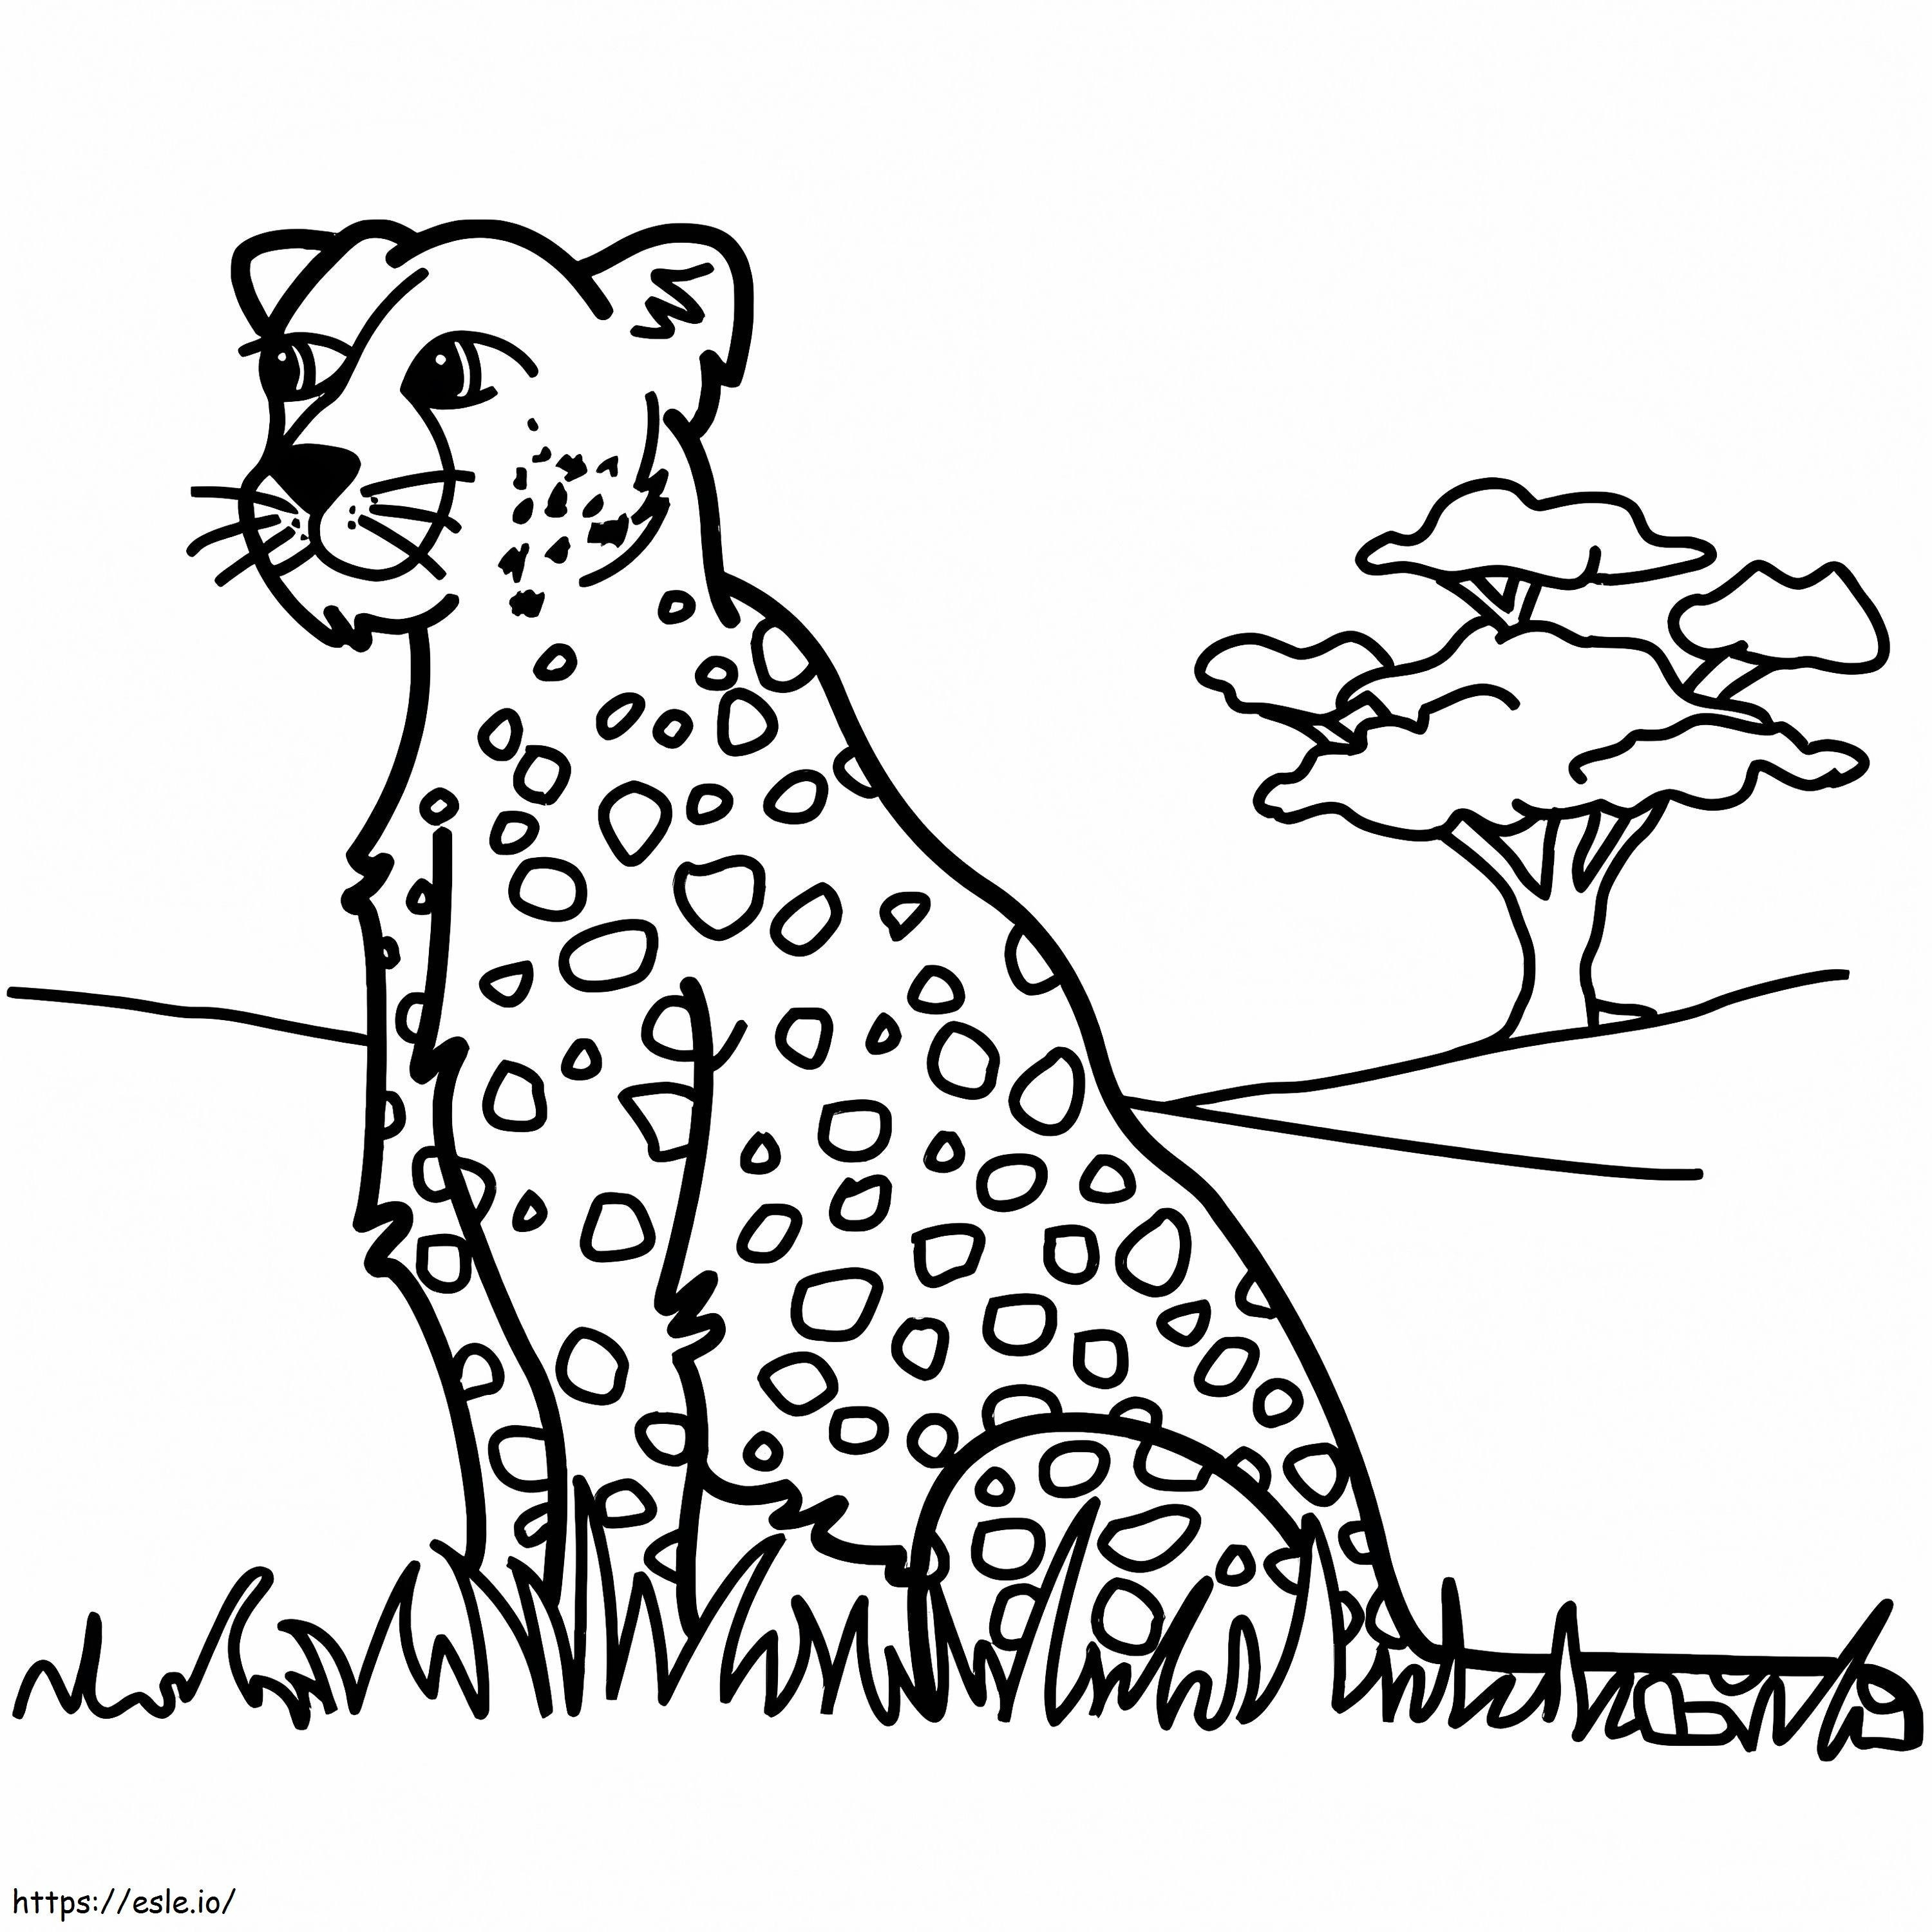 leopardo, sentado, en, pasto o césped para colorear